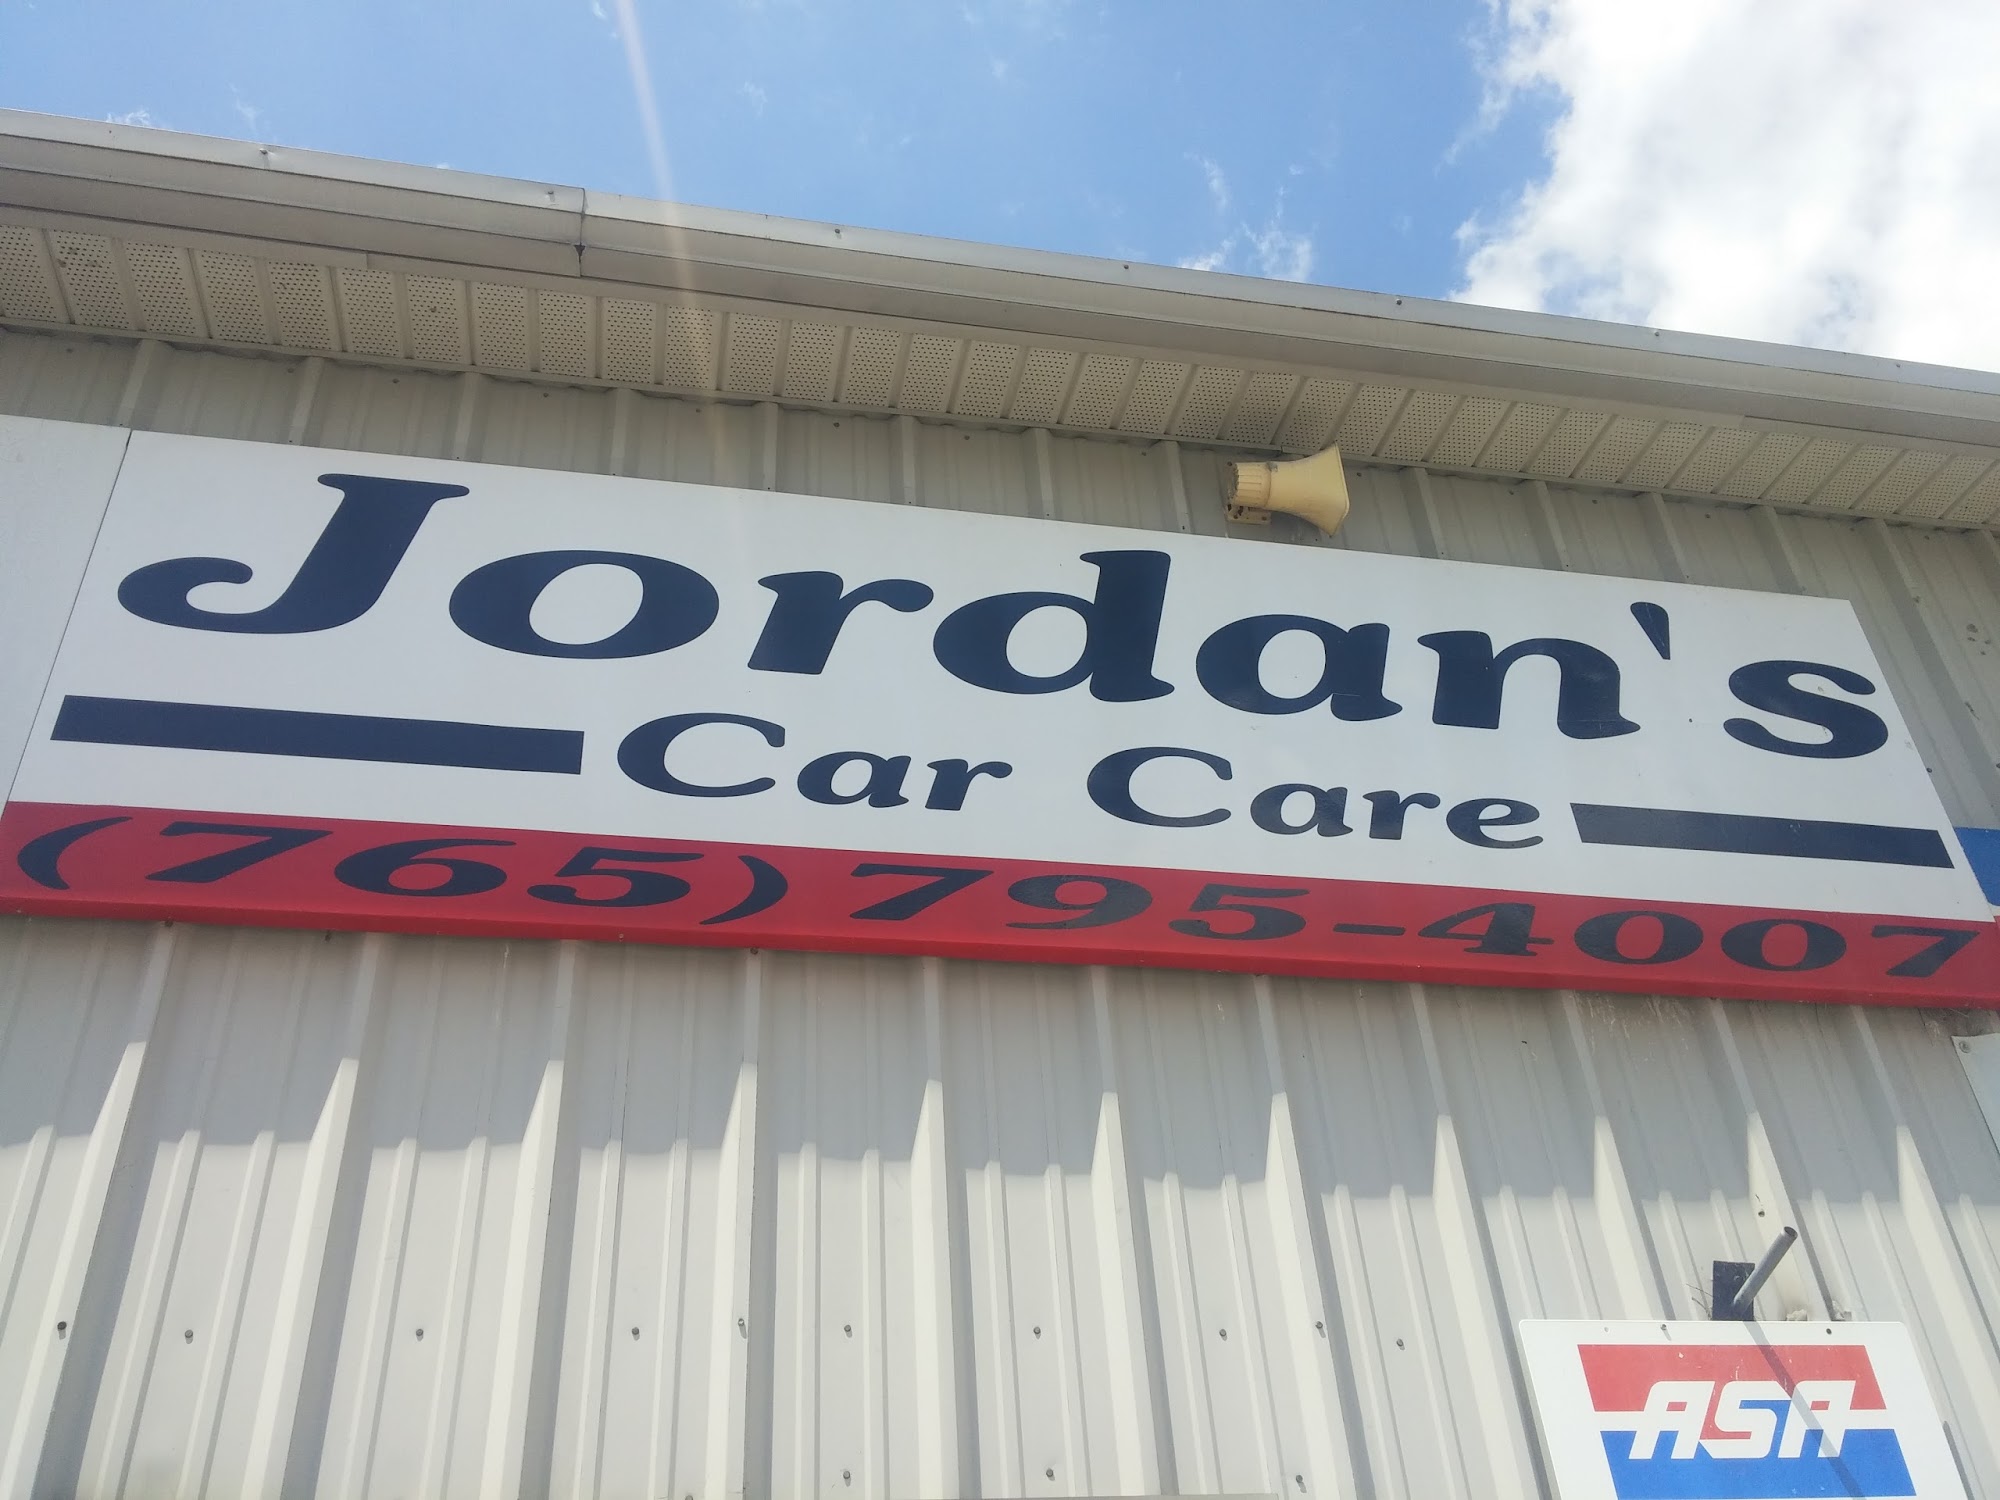 Jordan's Car Care, Inc